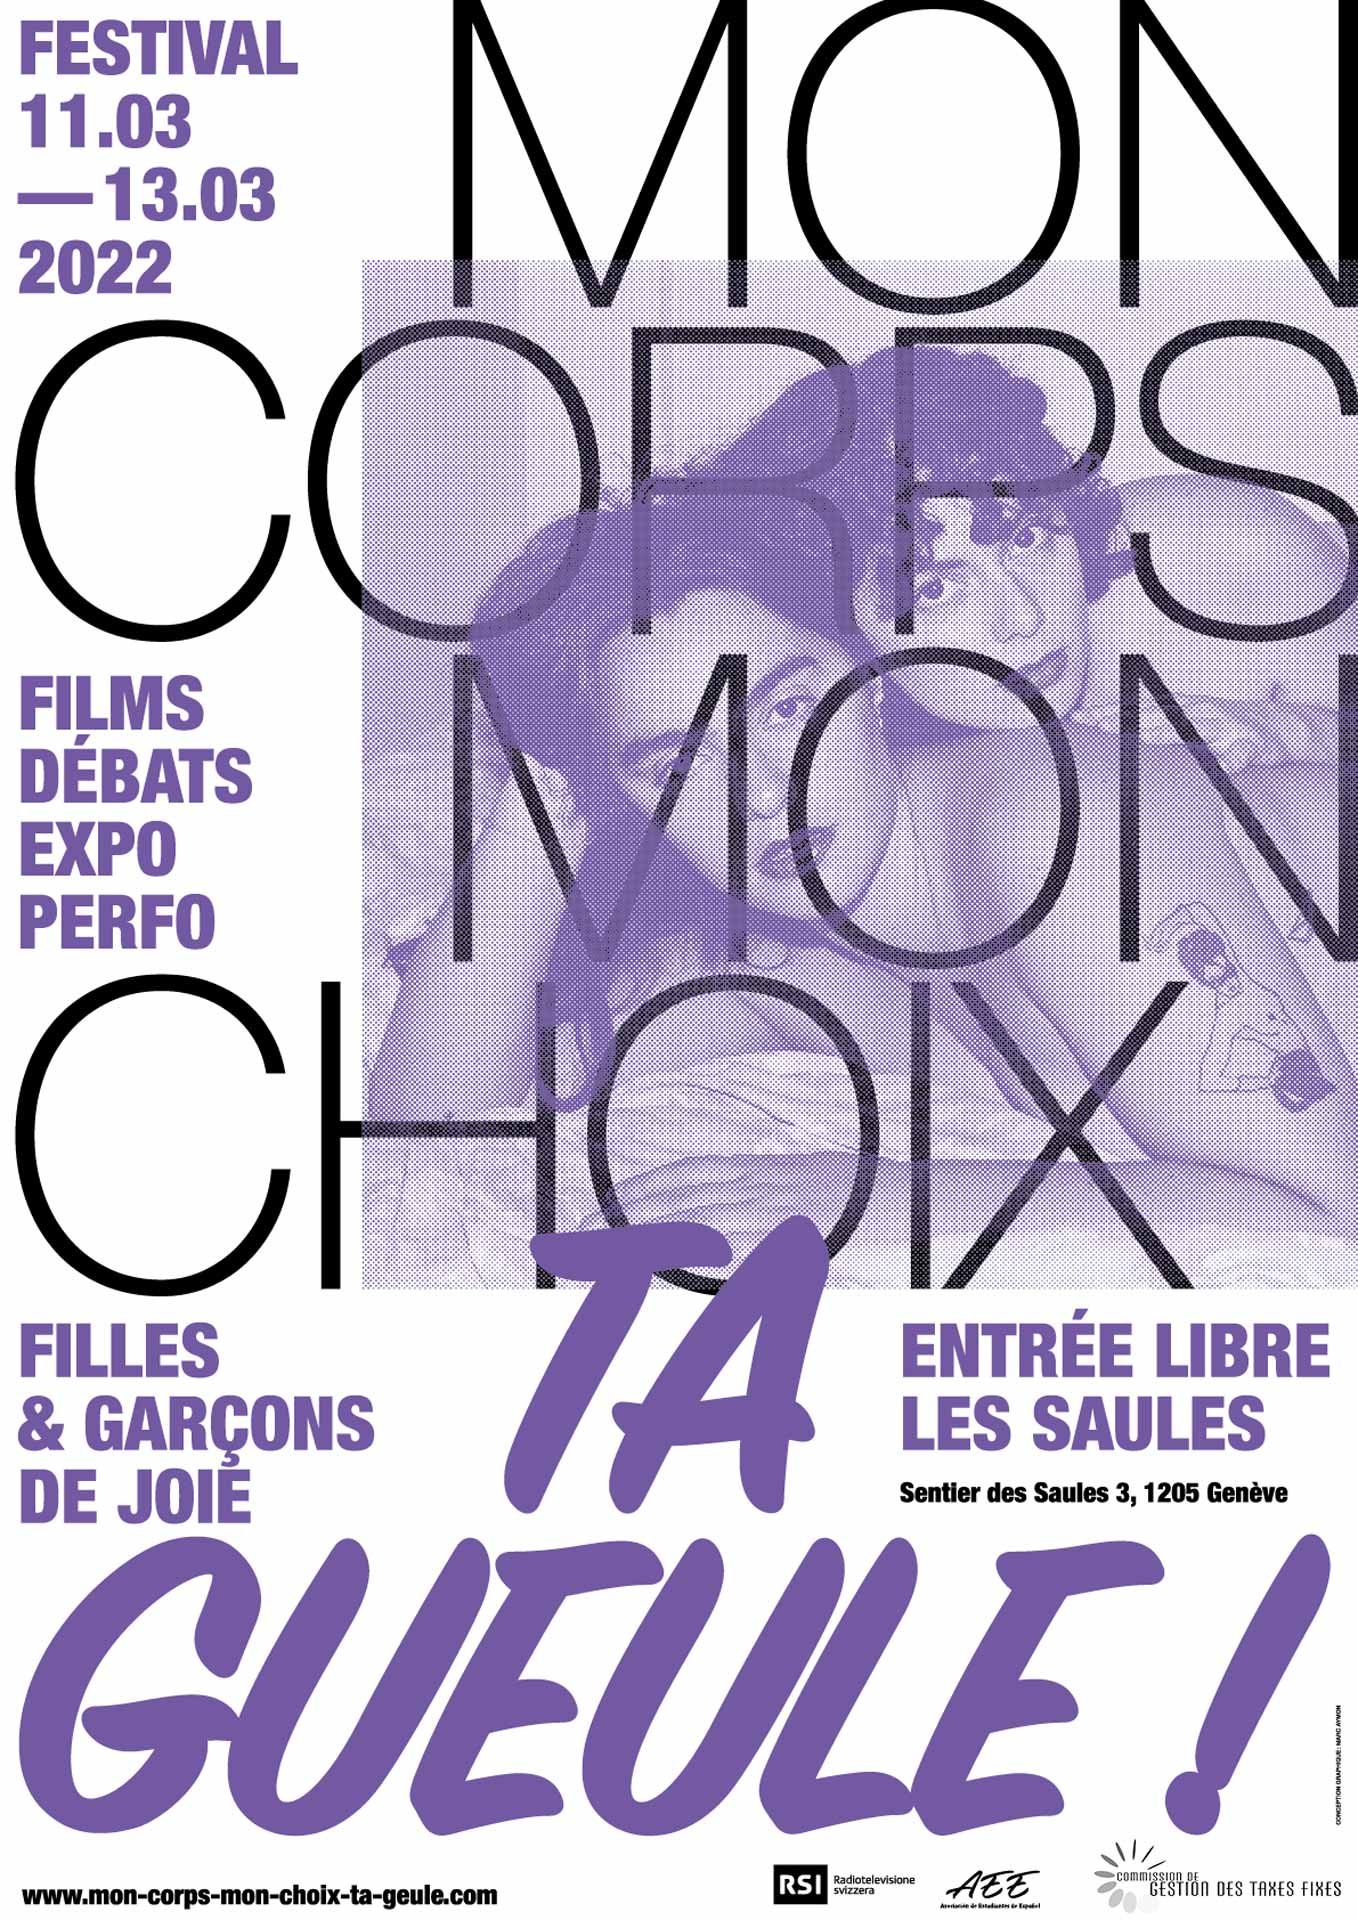 Affiche, avec un traitement typographique et une photographie de Romy Alizée, de la première édition du festival Mon Corps, Mon Choix, Ta Gueule! La thématique du festival est le corps, filles et garçons de joie.